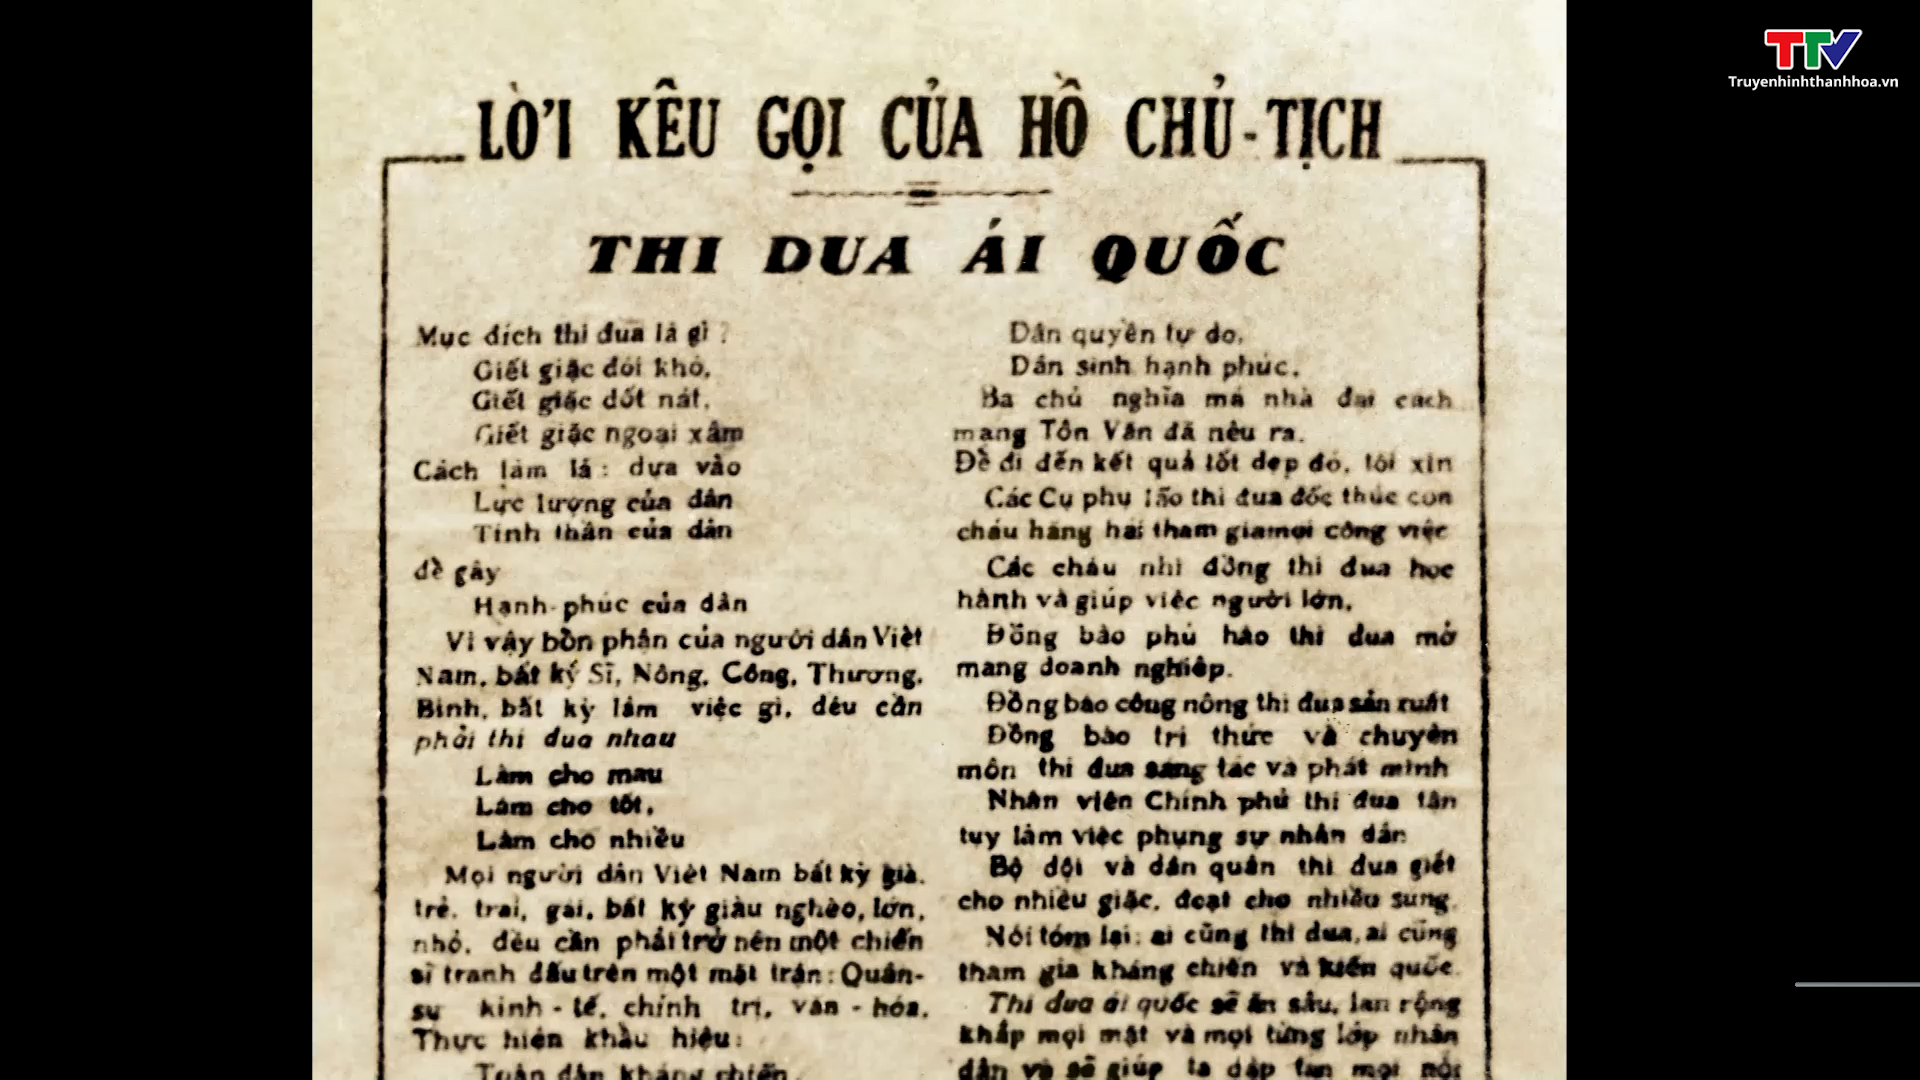 Trang tư liệu 75 năm Chủ tịch Hồ Chí Minh ra Lời kêu gọi thi đua ái quốc  - Ảnh 2.